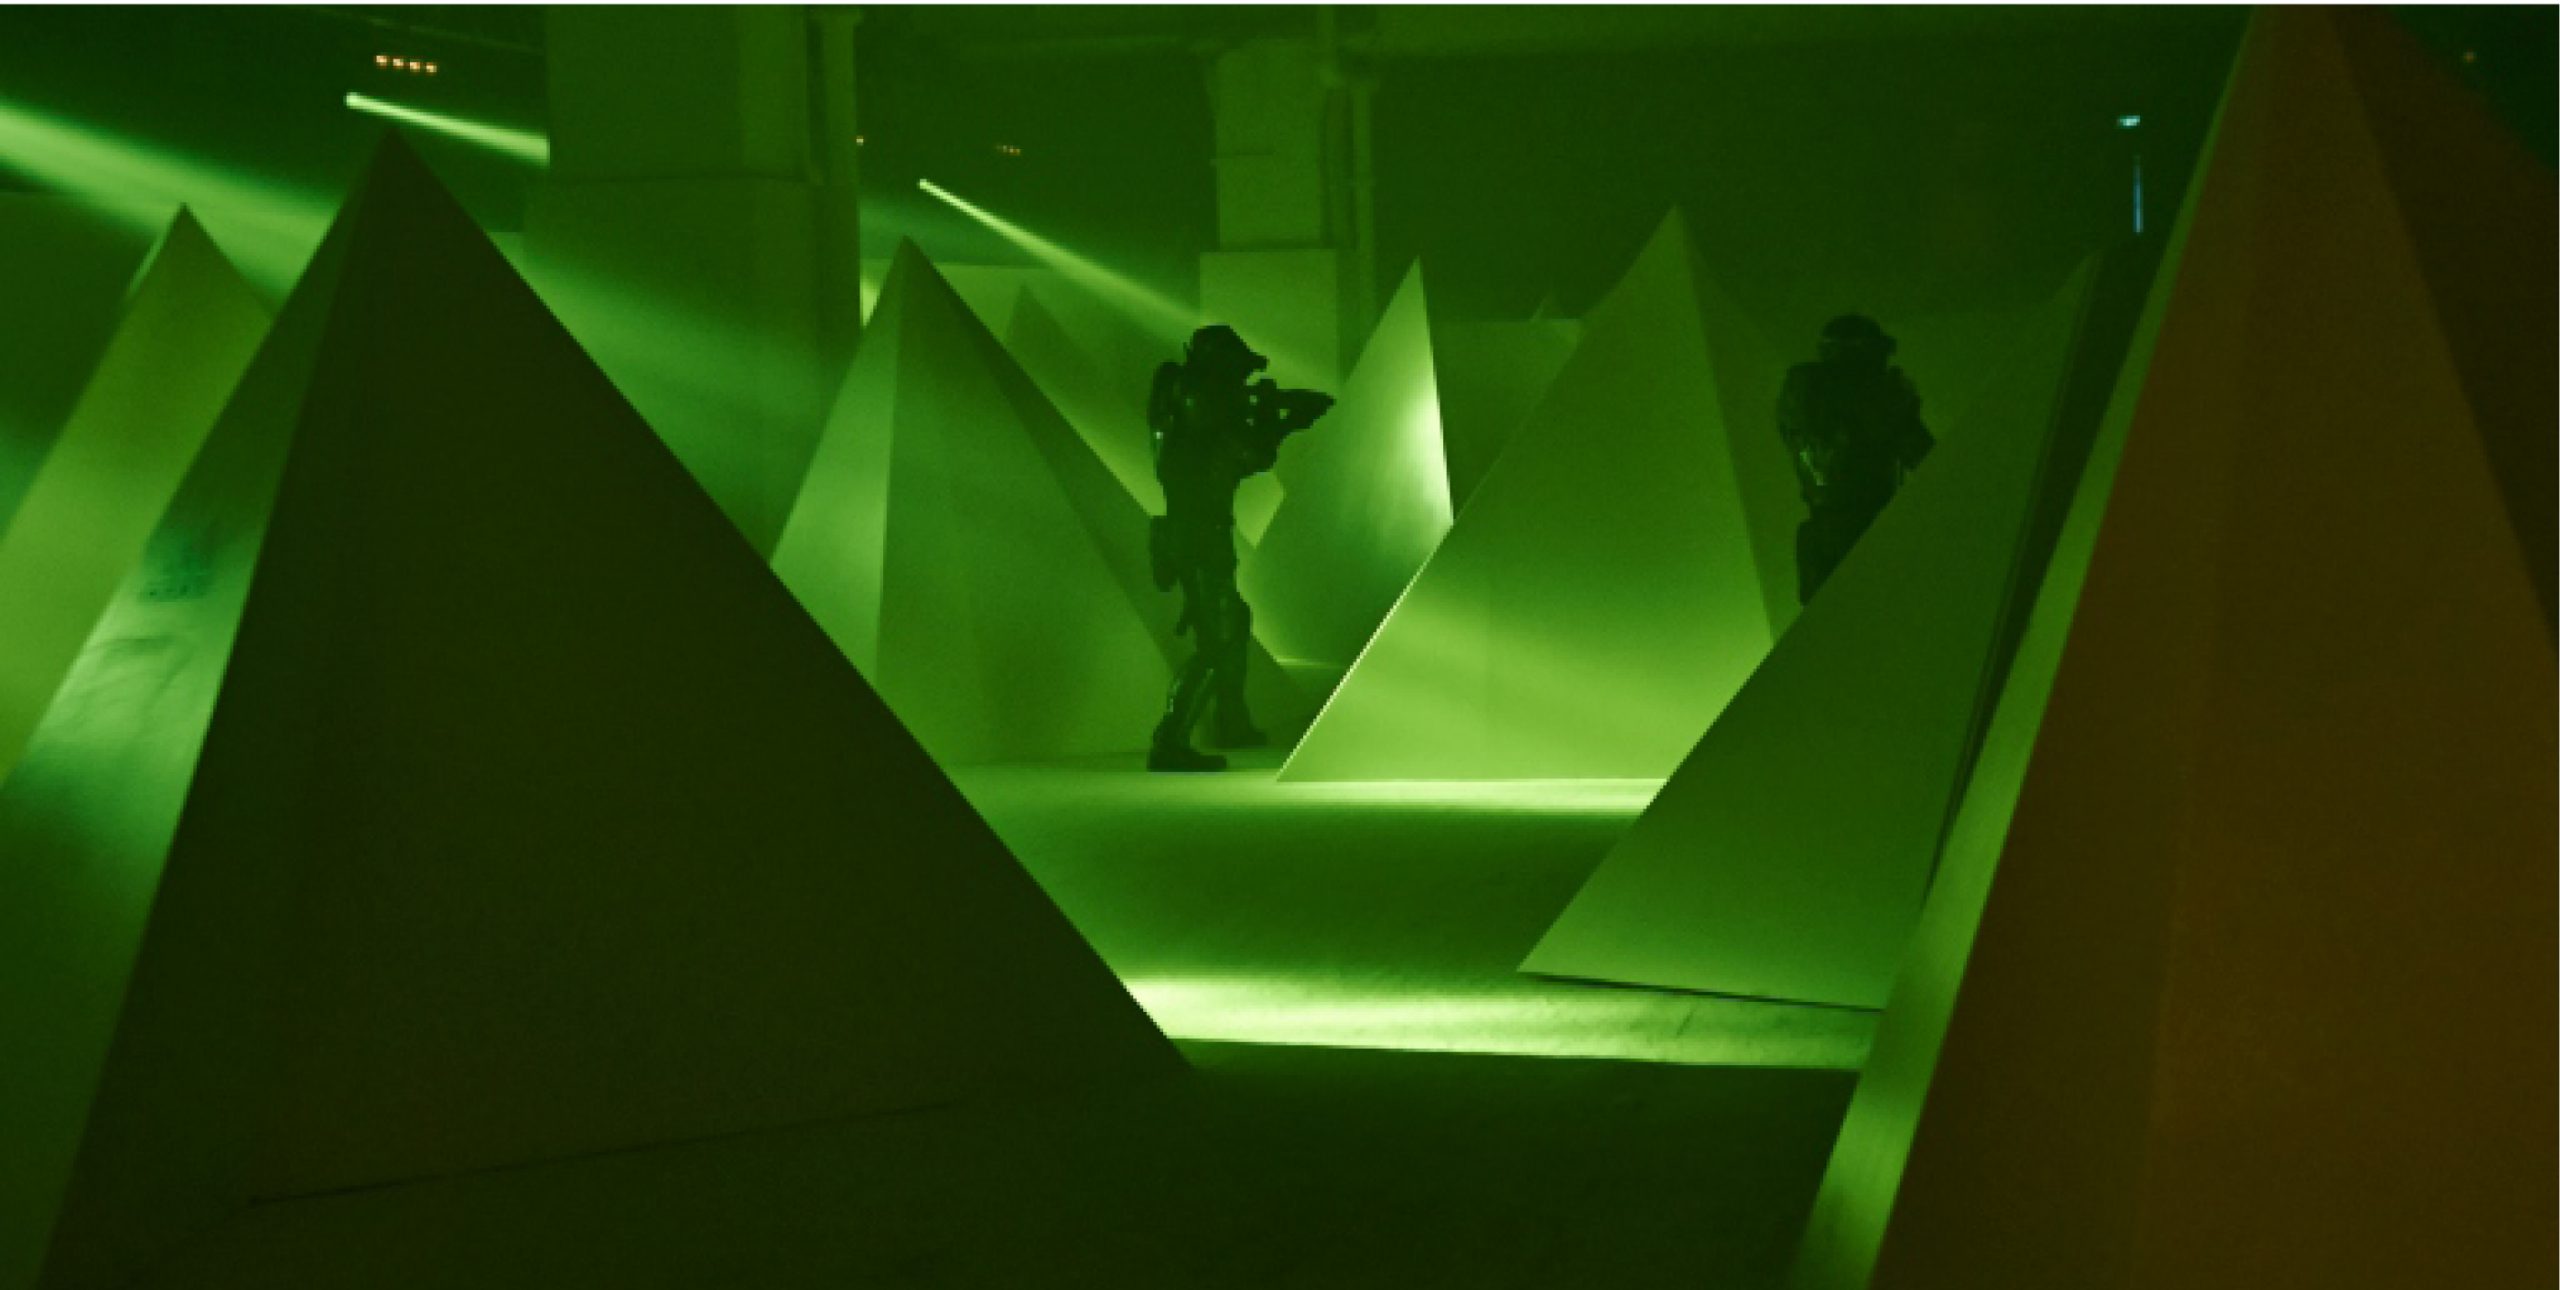 2 people shooting in green lighting